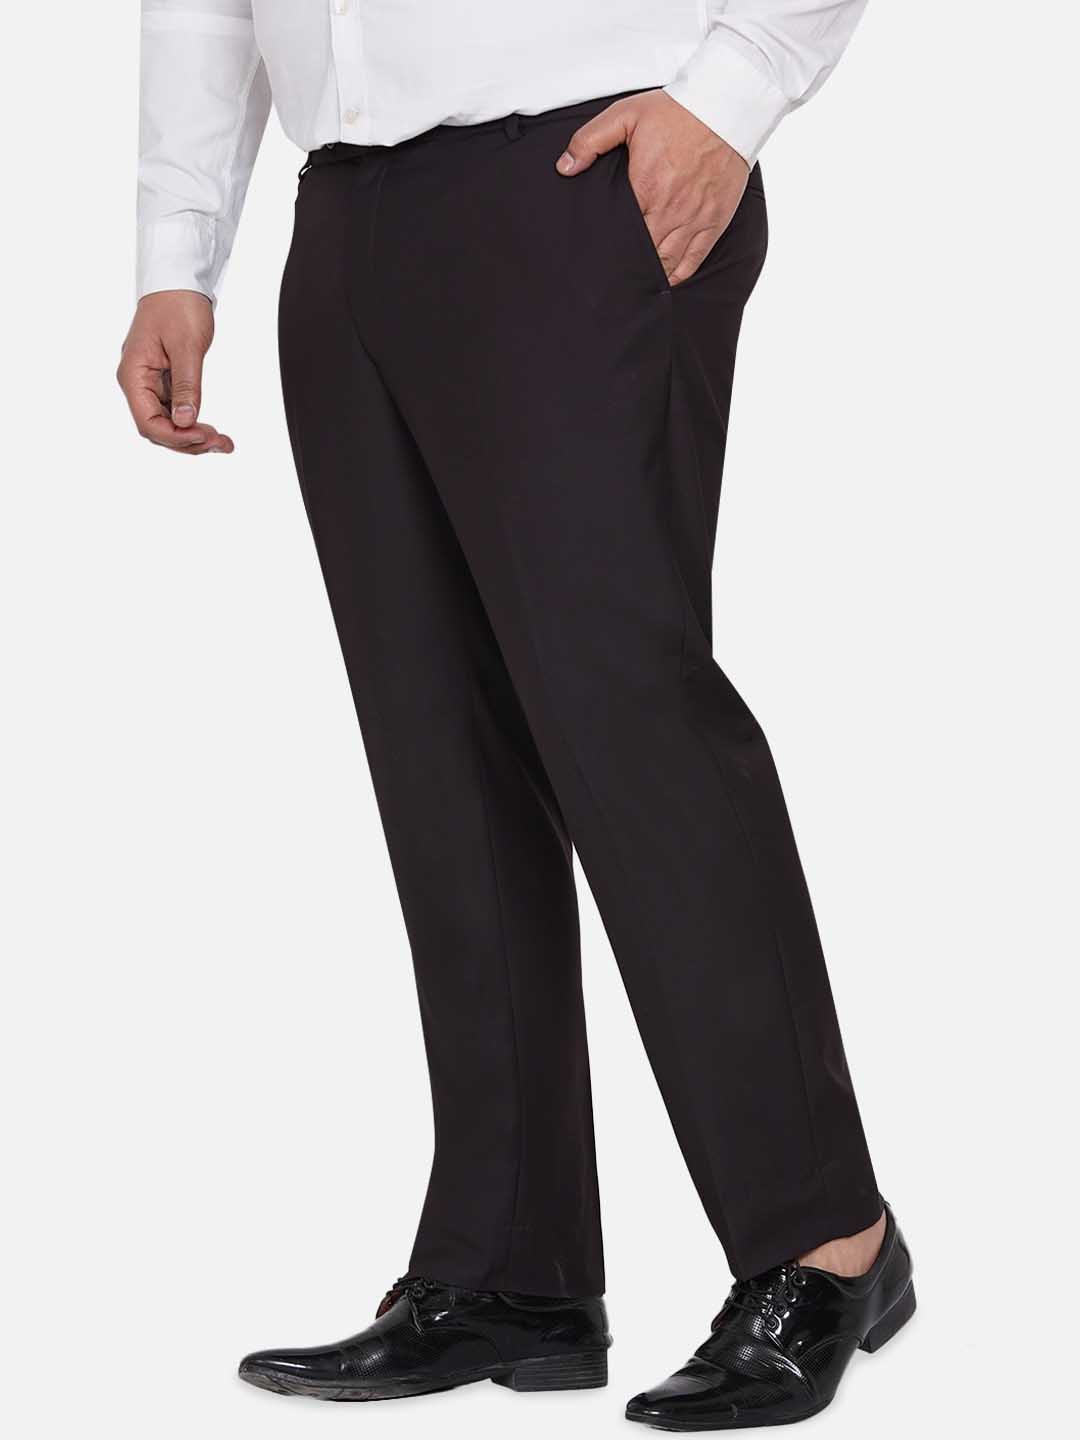 bottomwear/trousers/JPTR22010E/jptr22010e-4.jpg